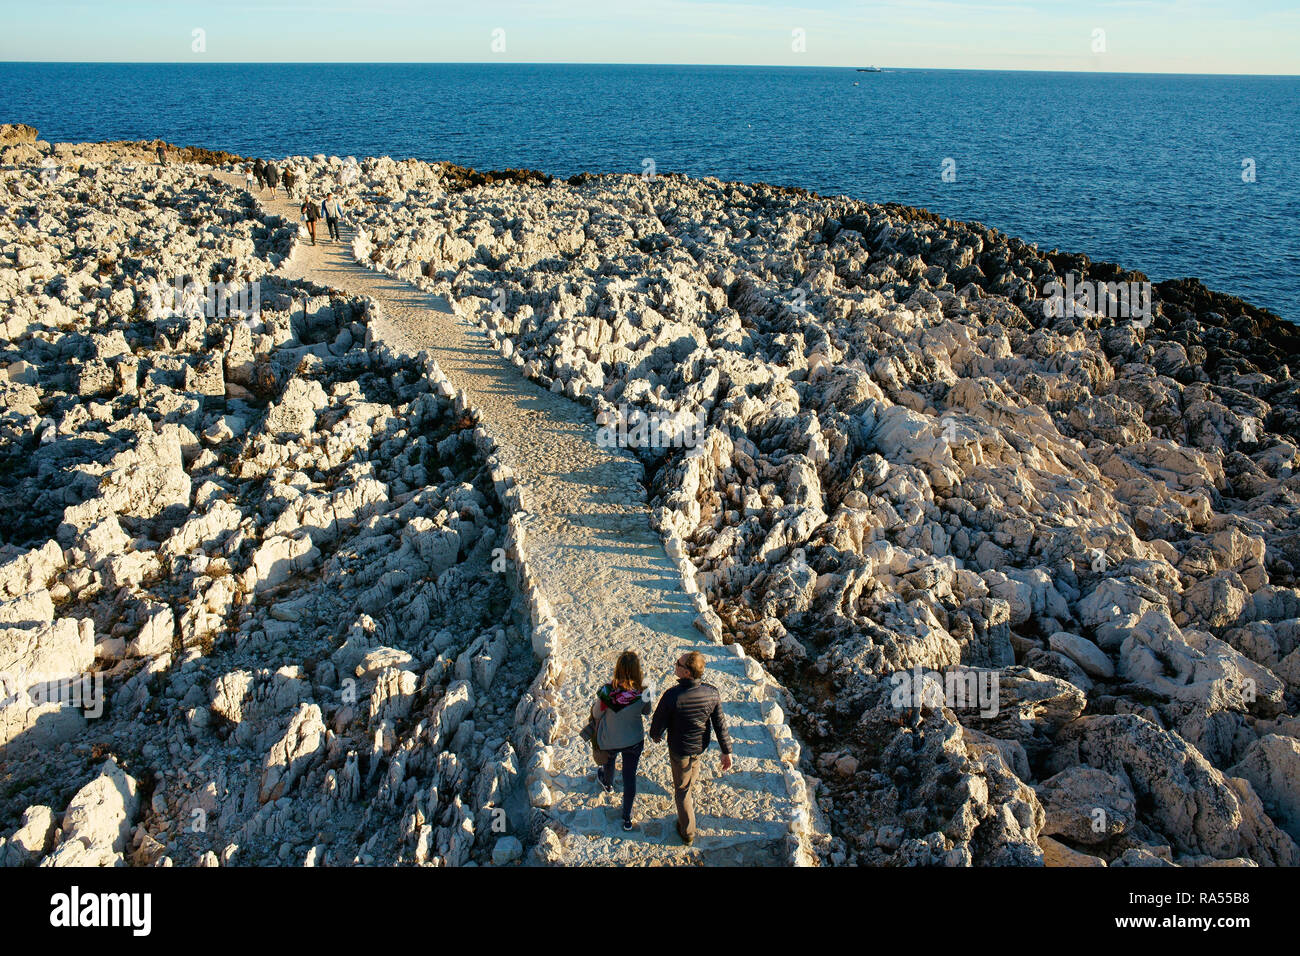 LUFTAUFNAHME von einem 6 m hohen Mast. Ein Paar, das auf einem Fußweg in einer Küstenlandschaft mit messerscharfen Kalksteinkämmen spazieren geht. Cap-Ferrat, Französische Riviera, Frankreich. Stockfoto